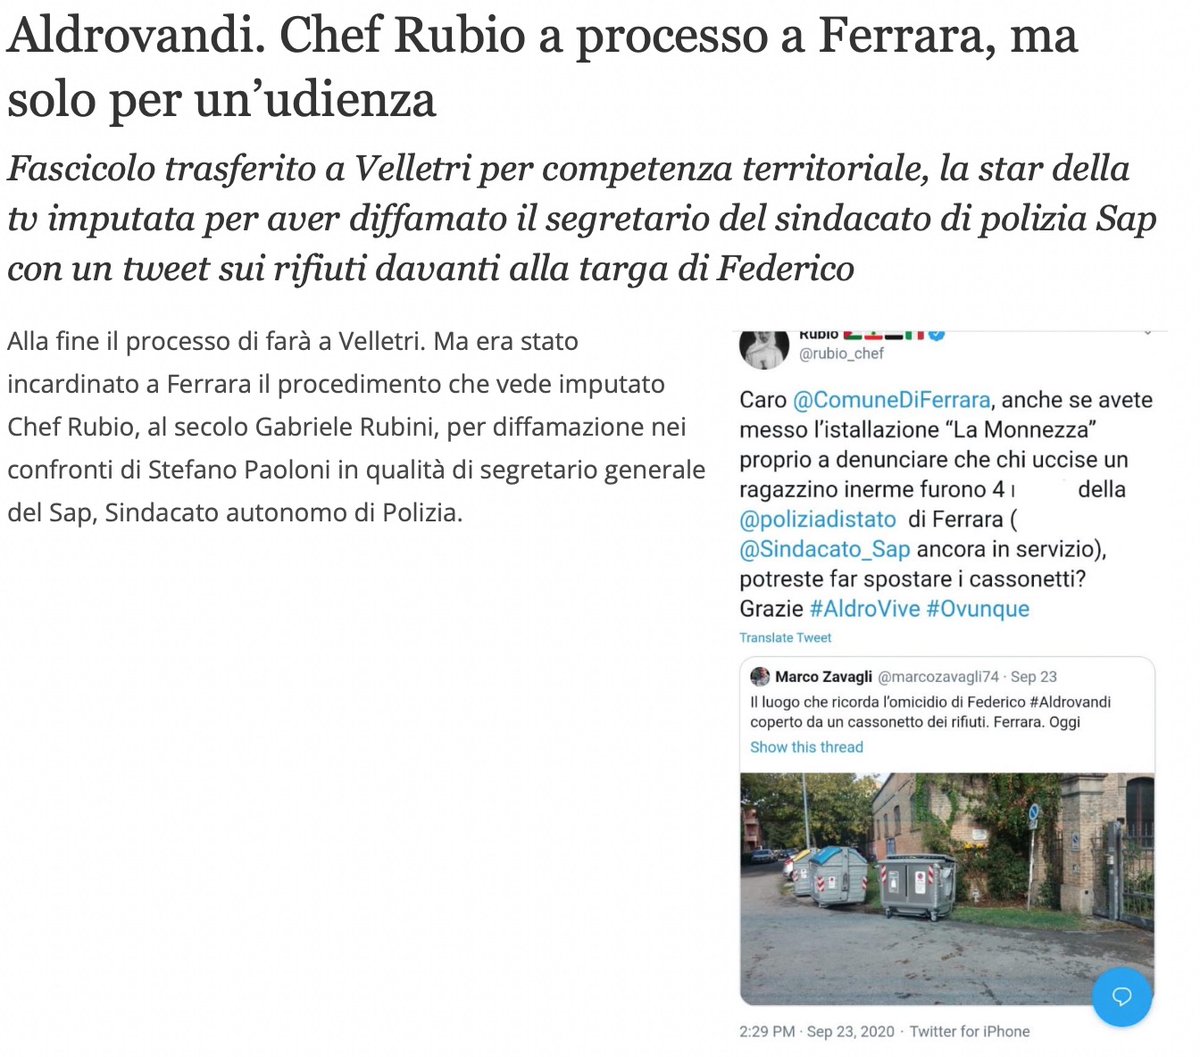 #FedericoVive e Chef Rubio lotta per lui e con noi 🐽
#federicoaldrovandi #federicoaldro #chefrubio